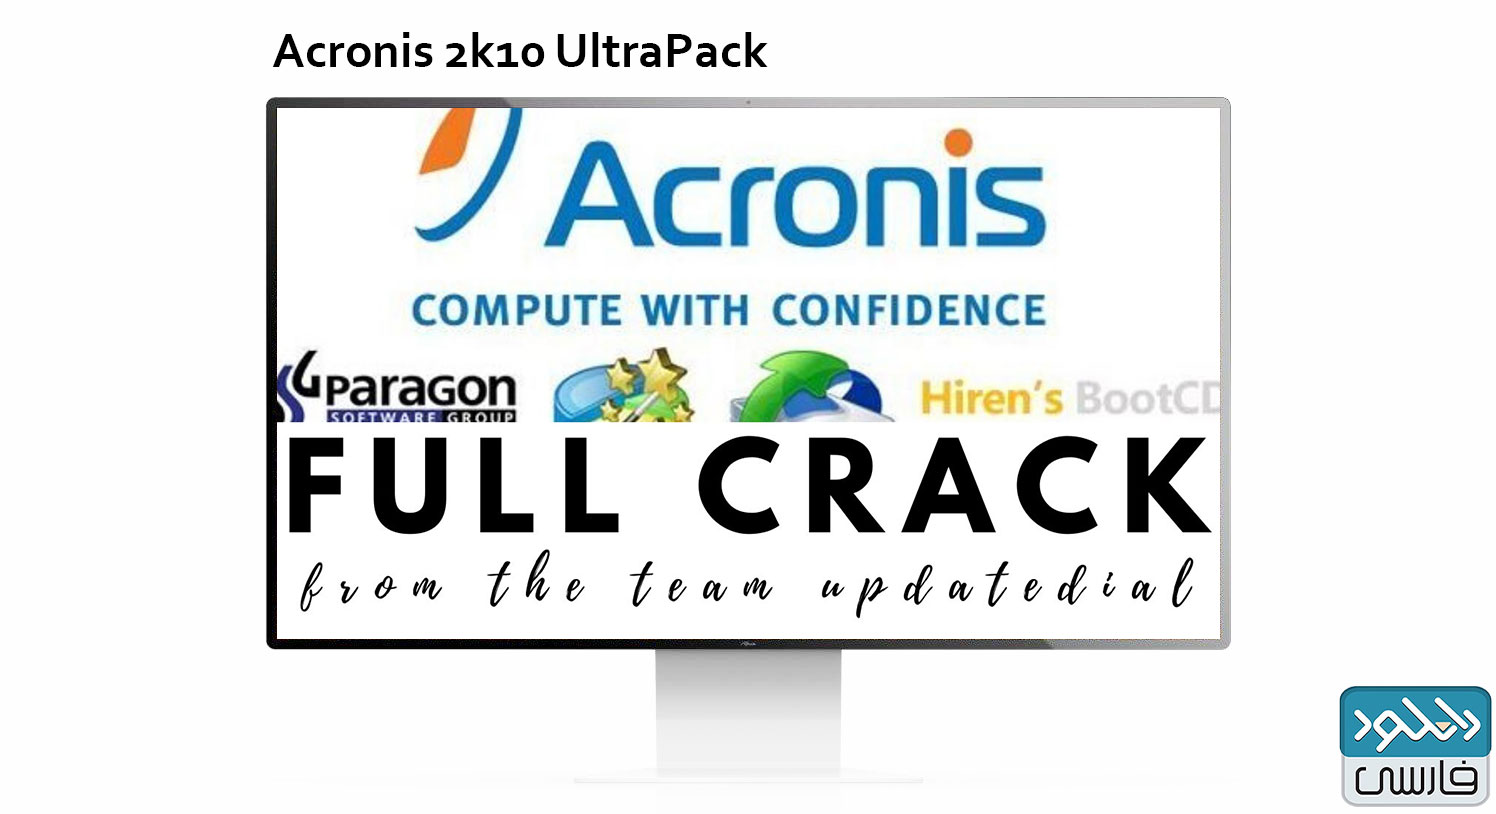 دانلود نرم افزار Acronis 2k10 UltraPack v7.30.1 نسخه ویندوز